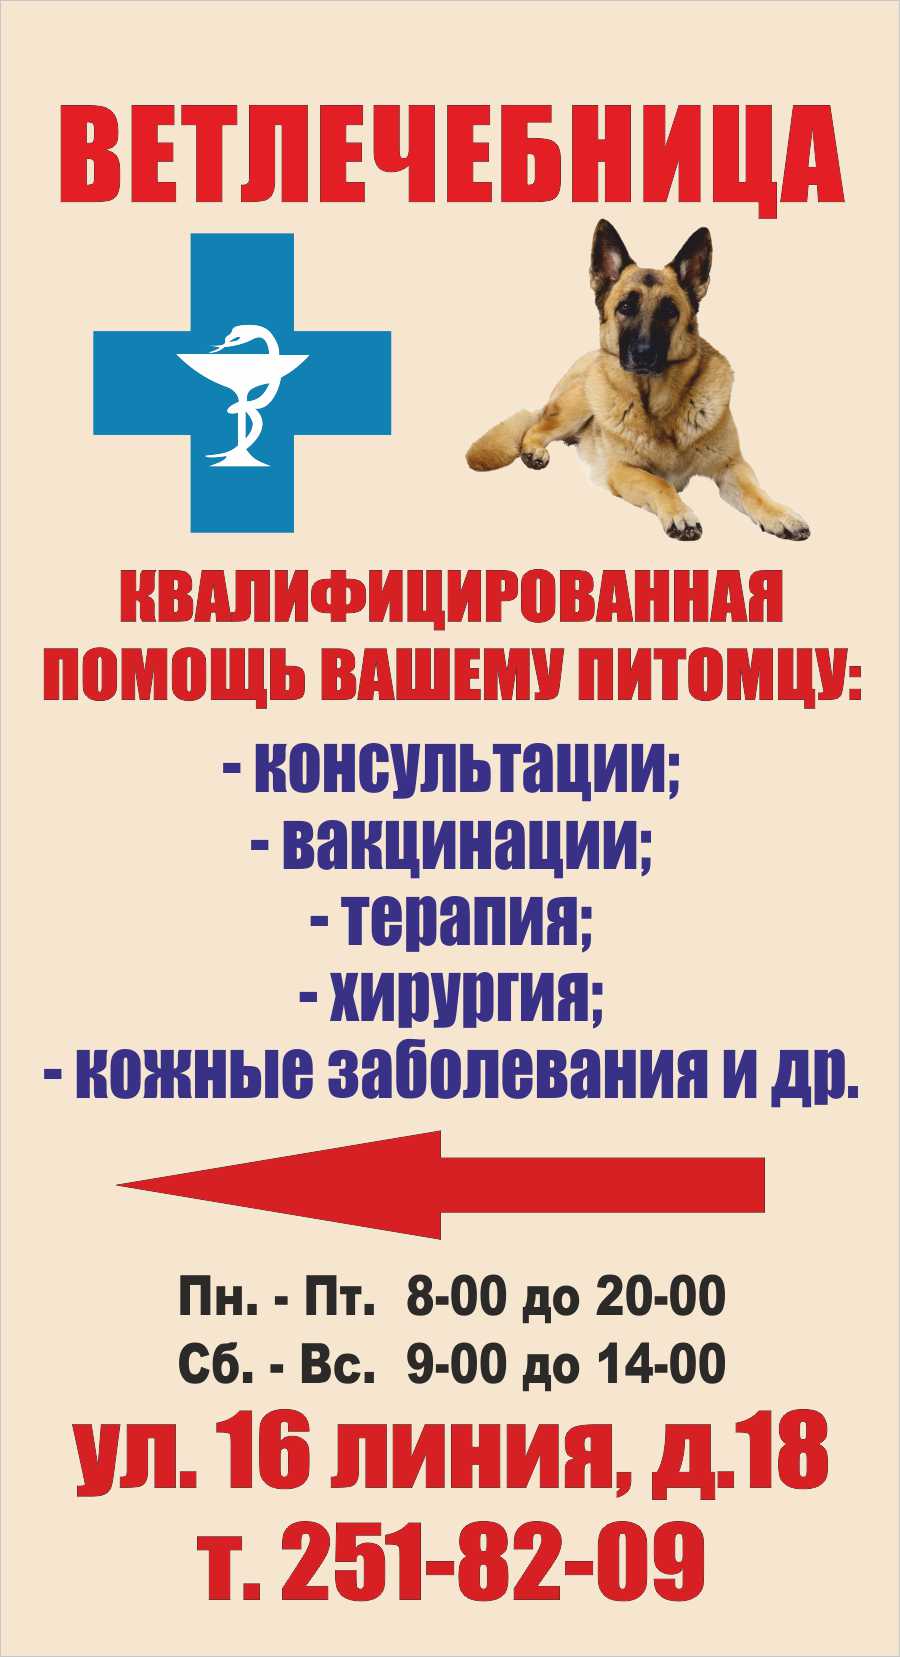 Печать на самоклейке интерьерного качества для штендера в Ростове-на-Дону.